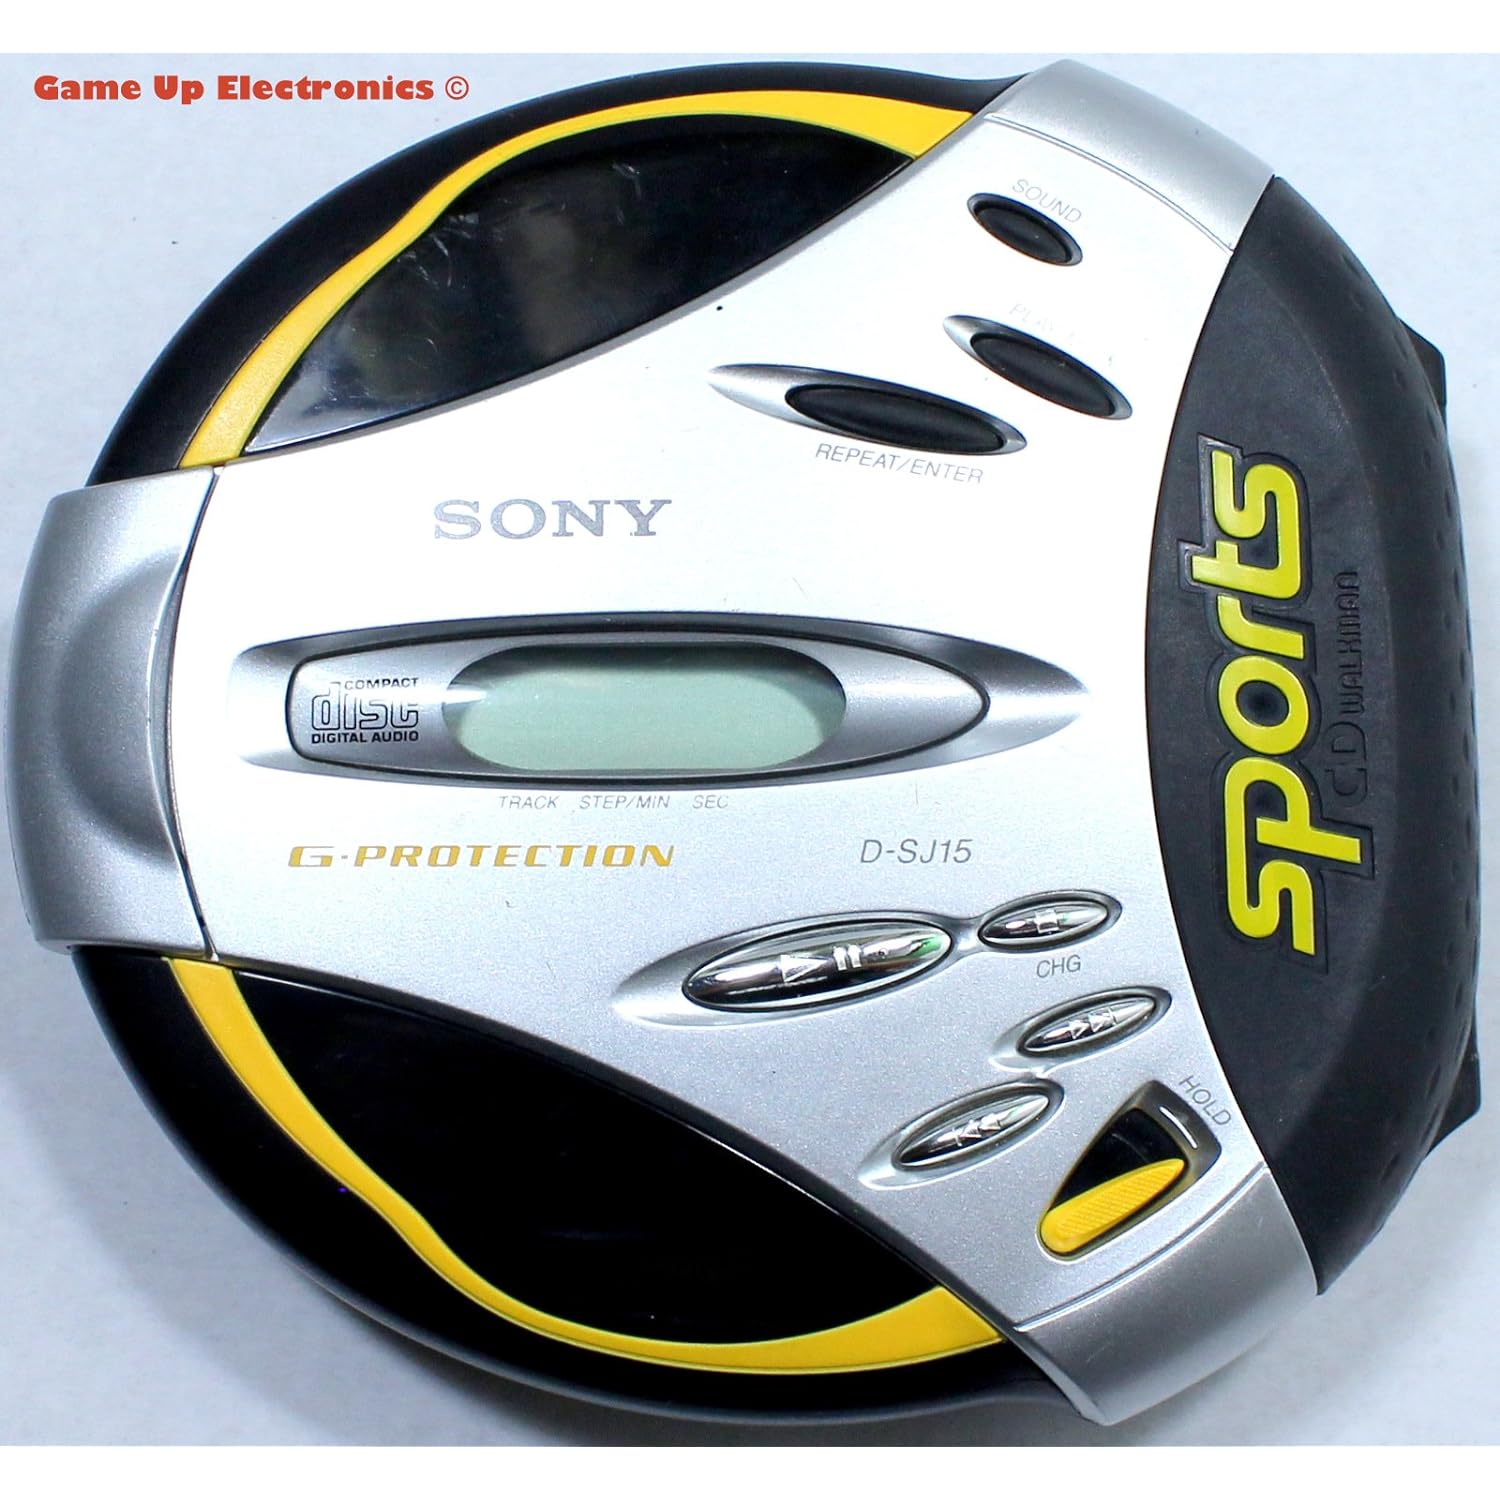 Sony DSJ15 Portable CD Walkman